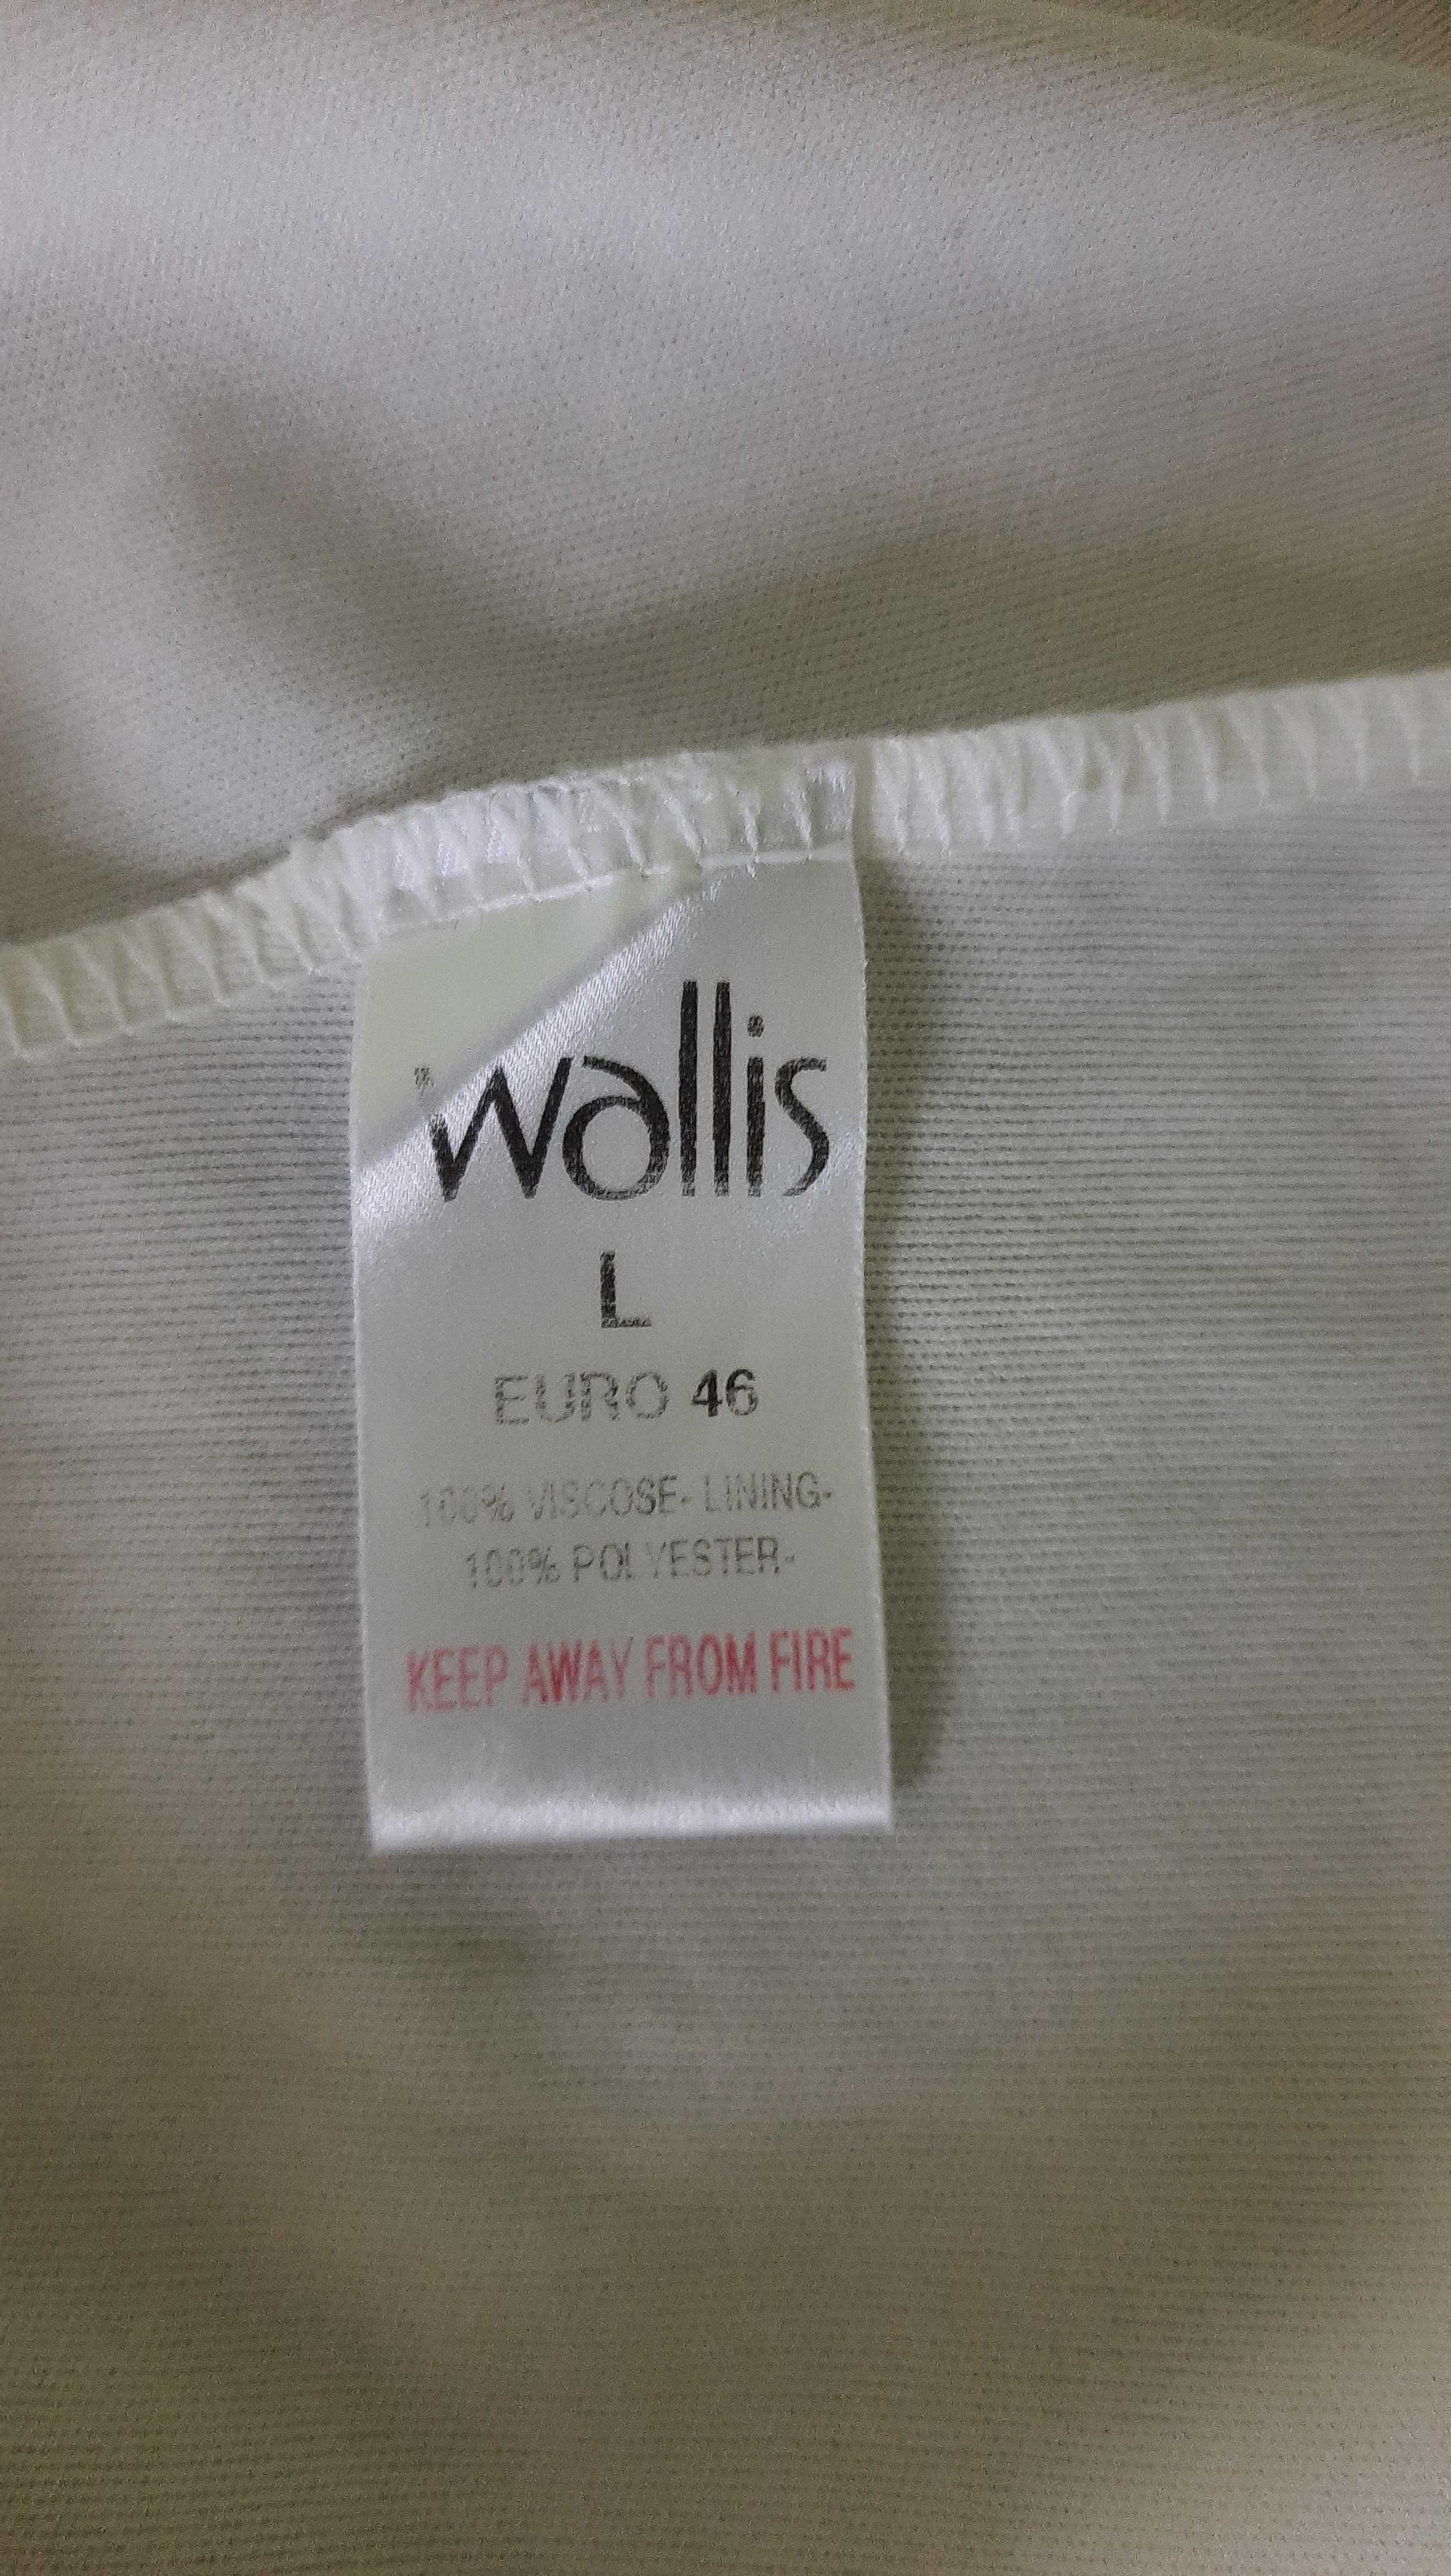 Ładna bluzka na lato lub pod żakiet, firma Wallis, rozm L